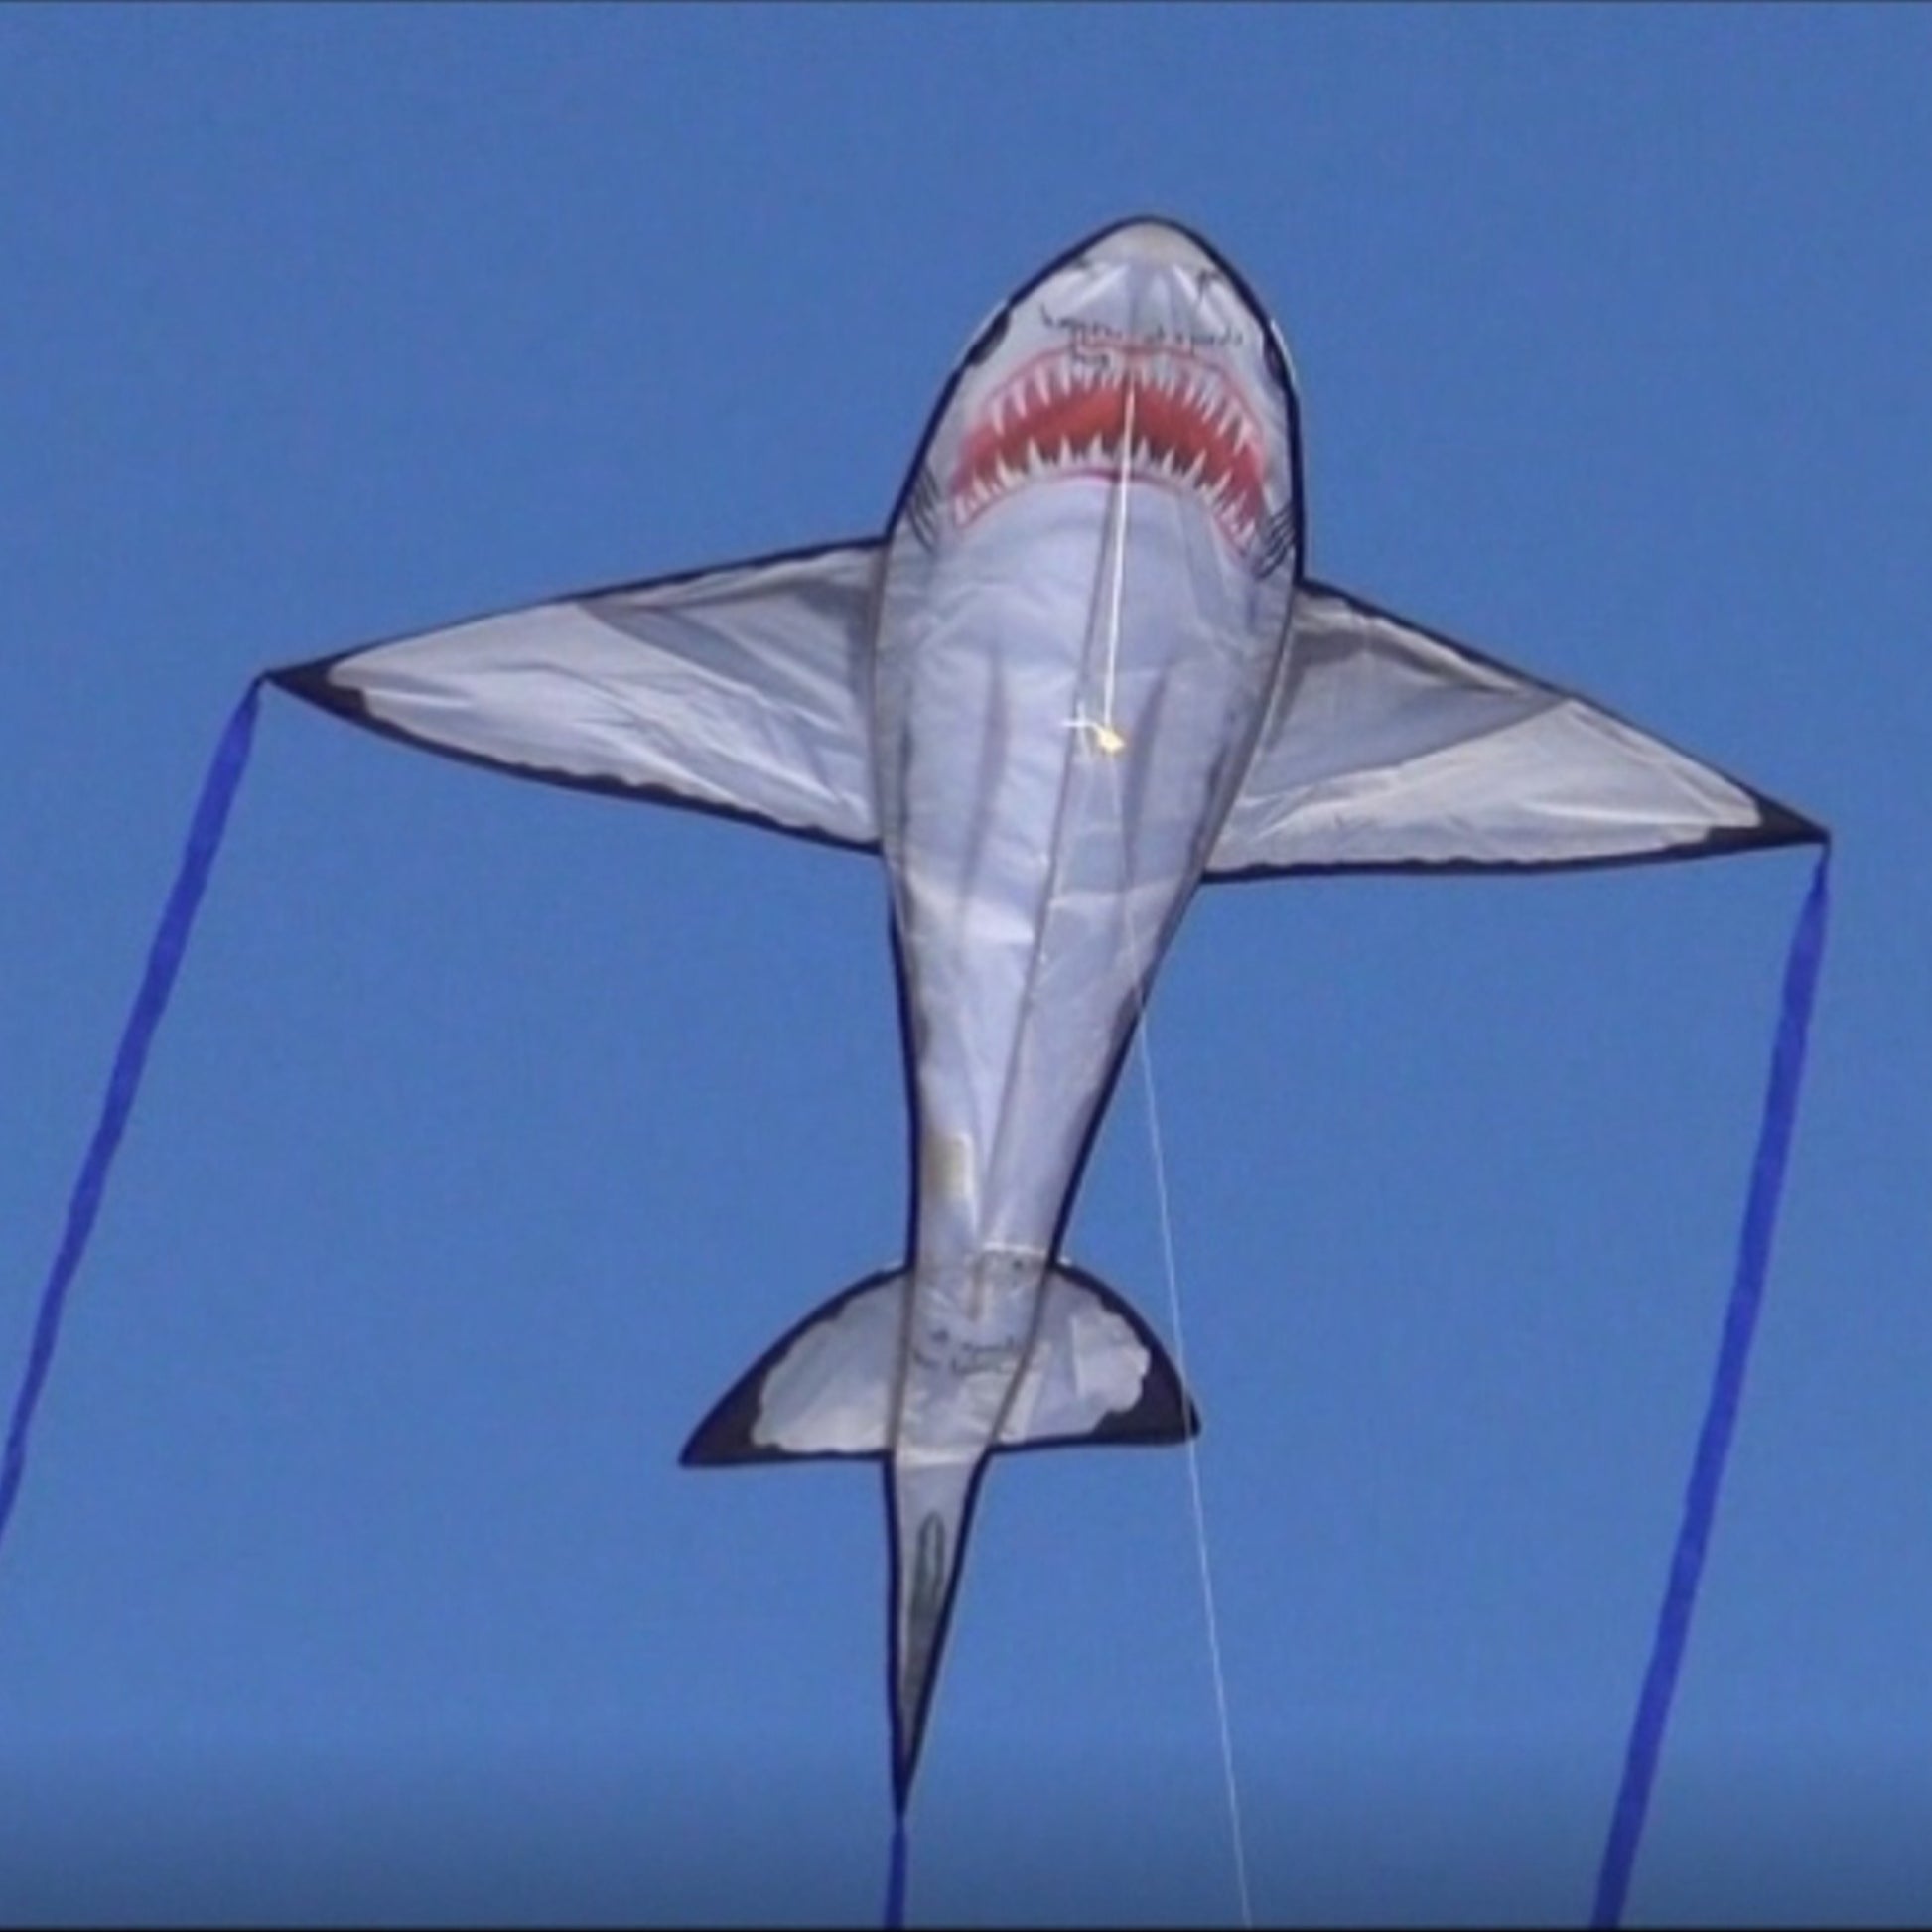 windnsun sealife great white shark nylon kite flying